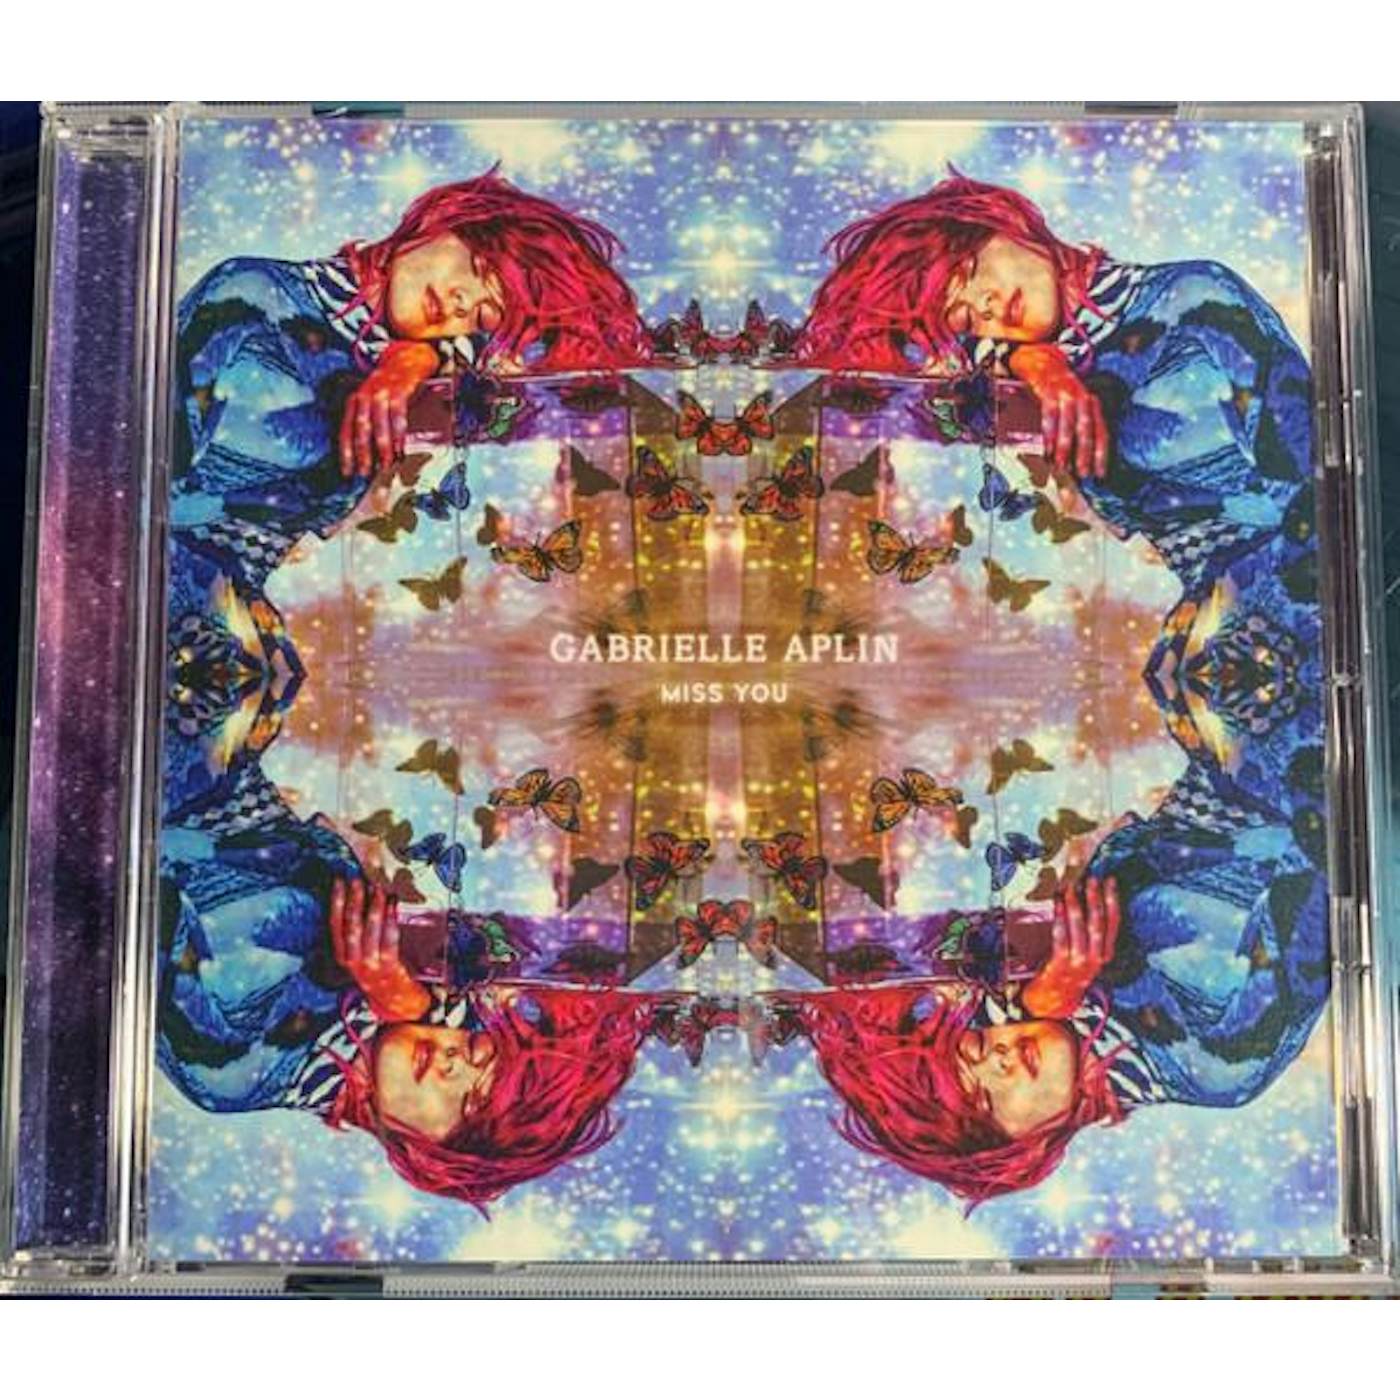 Gabrielle Aplin MISS YOU (BONUS TRACK) CD